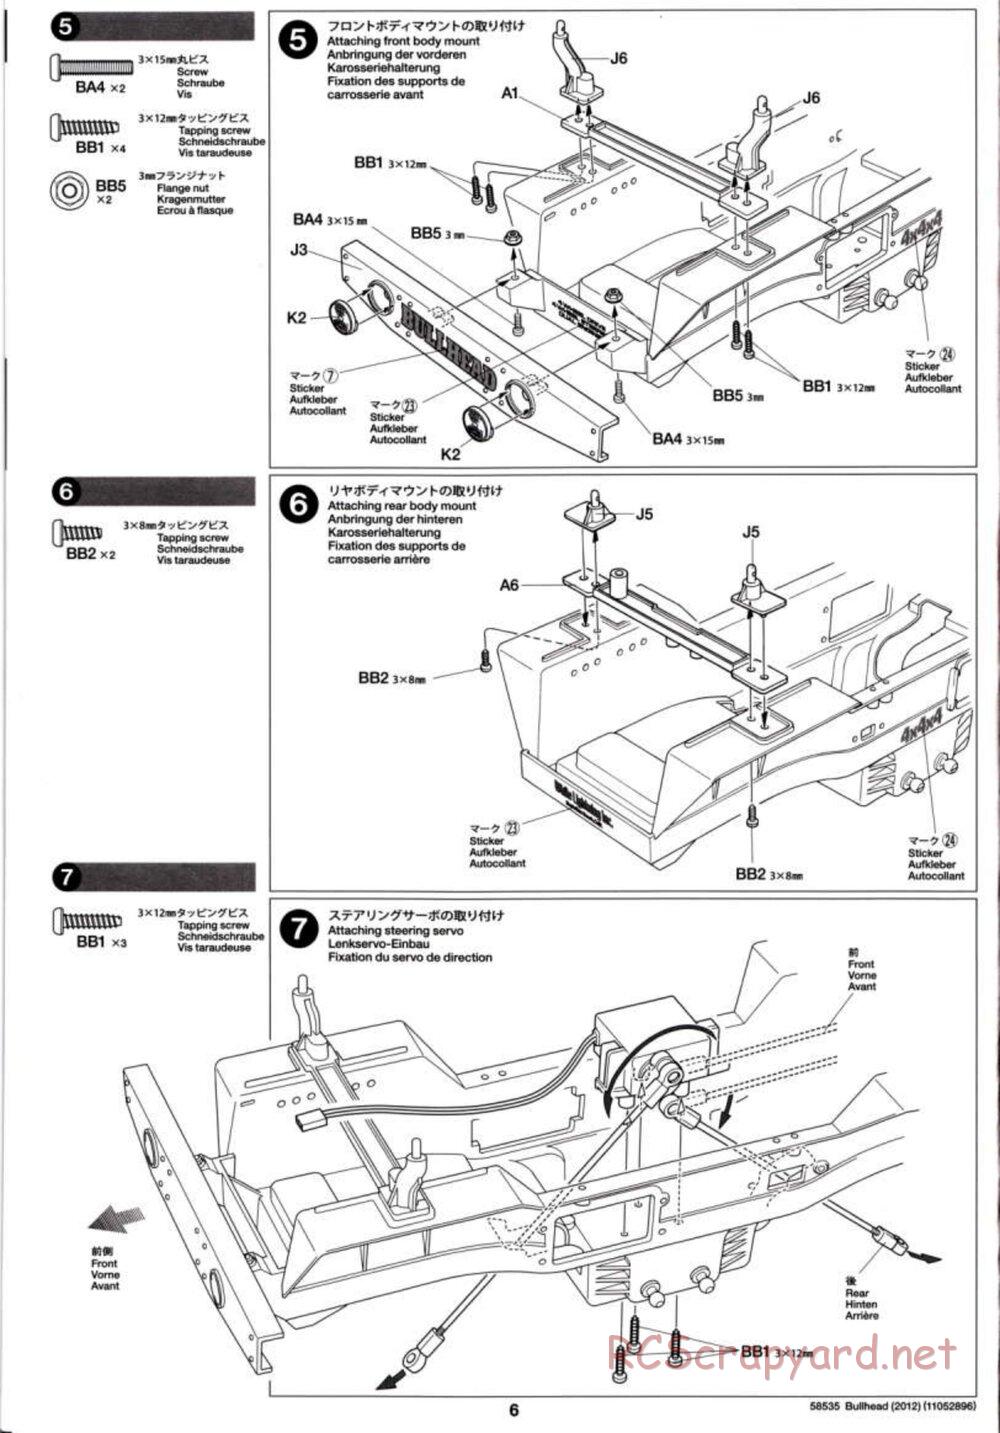 Tamiya - Bullhead 2012 - CB Chassis - Manual - Page 6